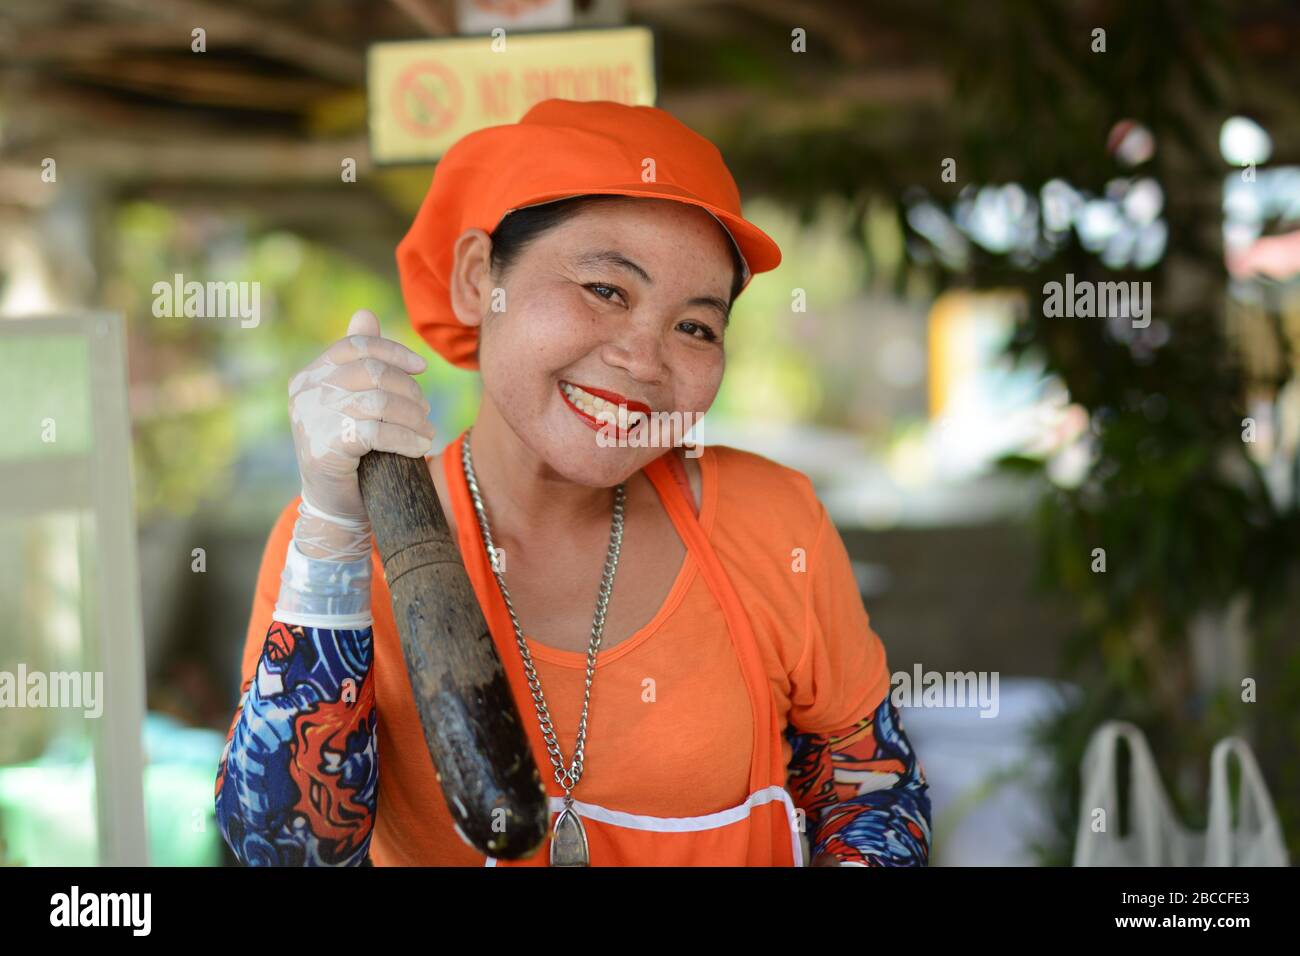 La Dame thaïlandaise fait du SomTam 'Papaya Salad' Banque D'Images